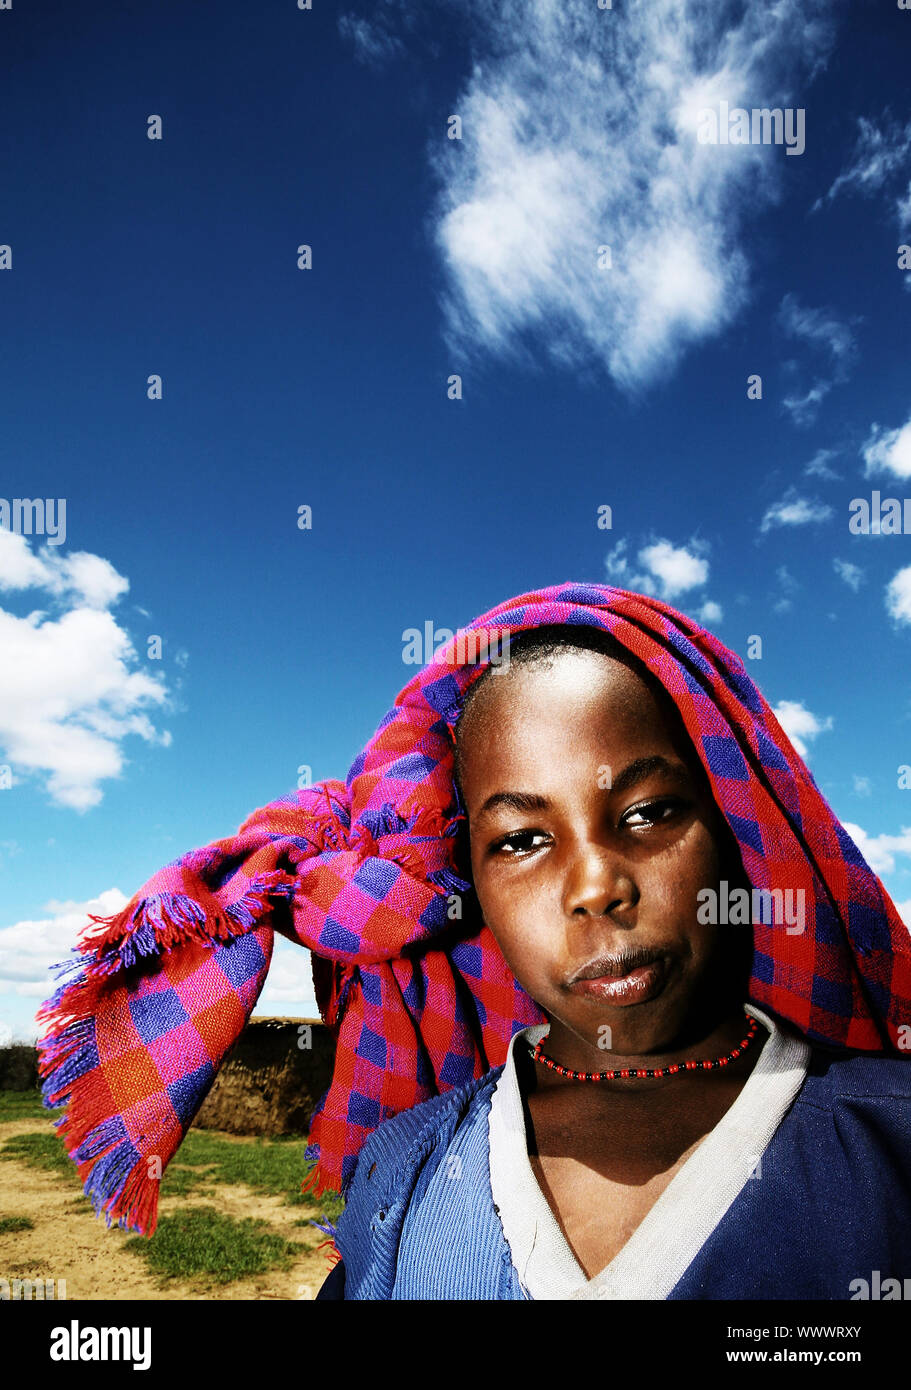 Poor African child outdoor portrait Stock Photo